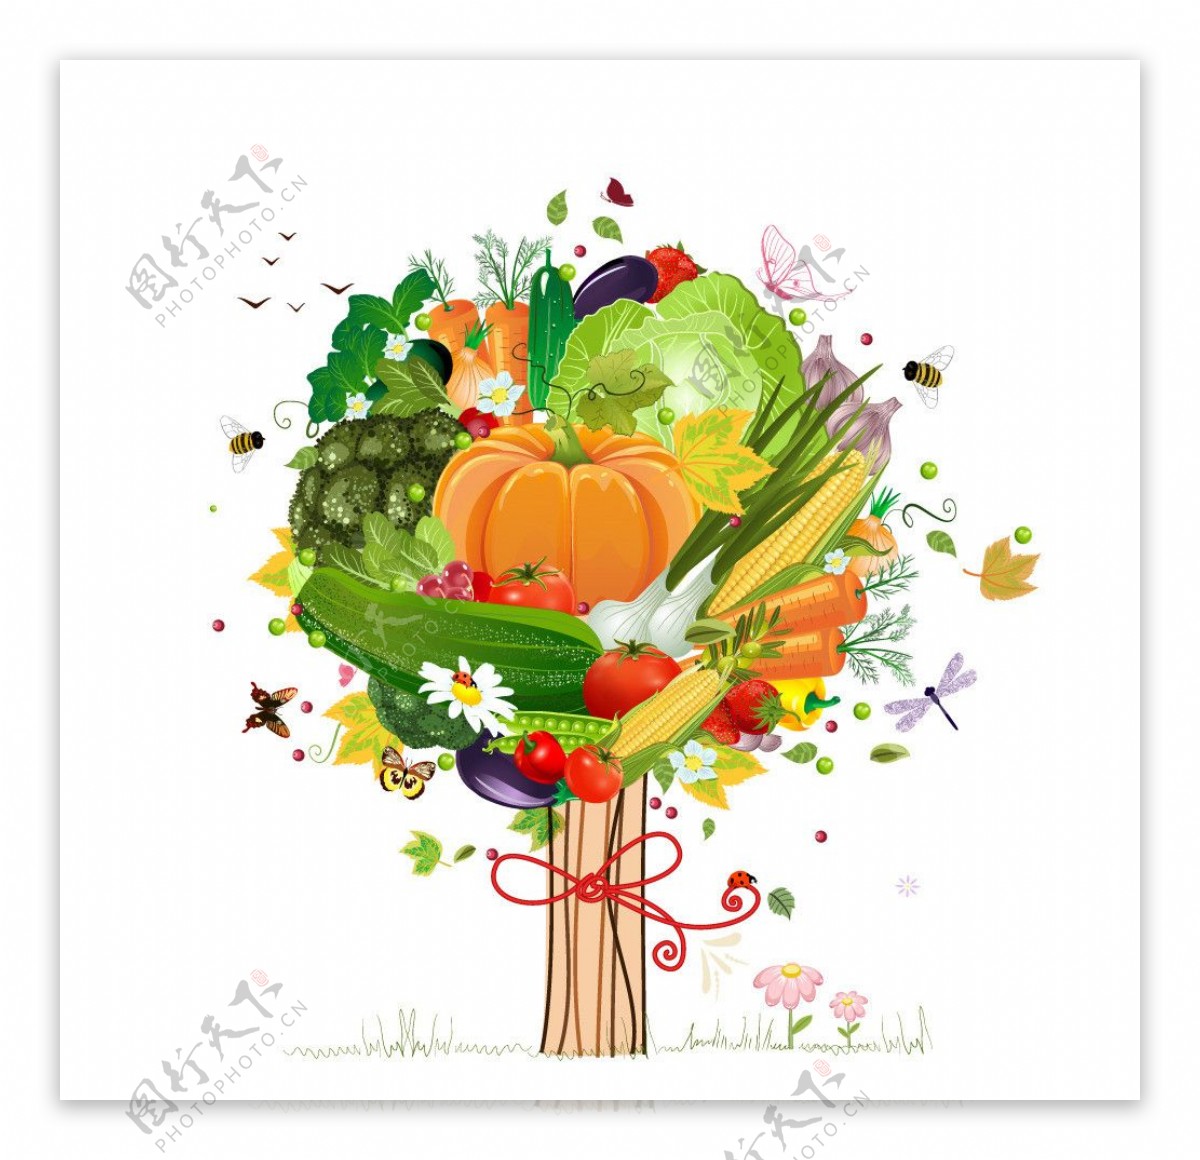 蔬菜装饰树图片